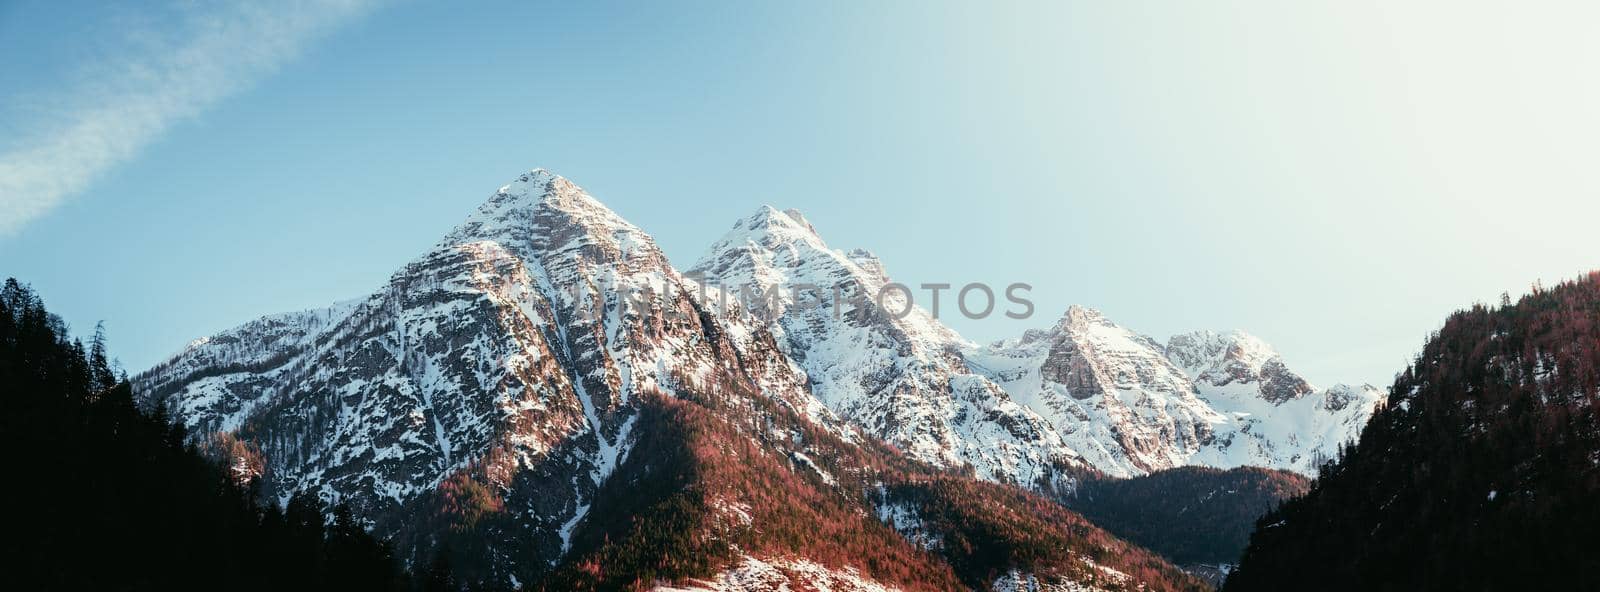 Idyllic scenery with snowy mountains, Alps, Austria by Daxenbichler